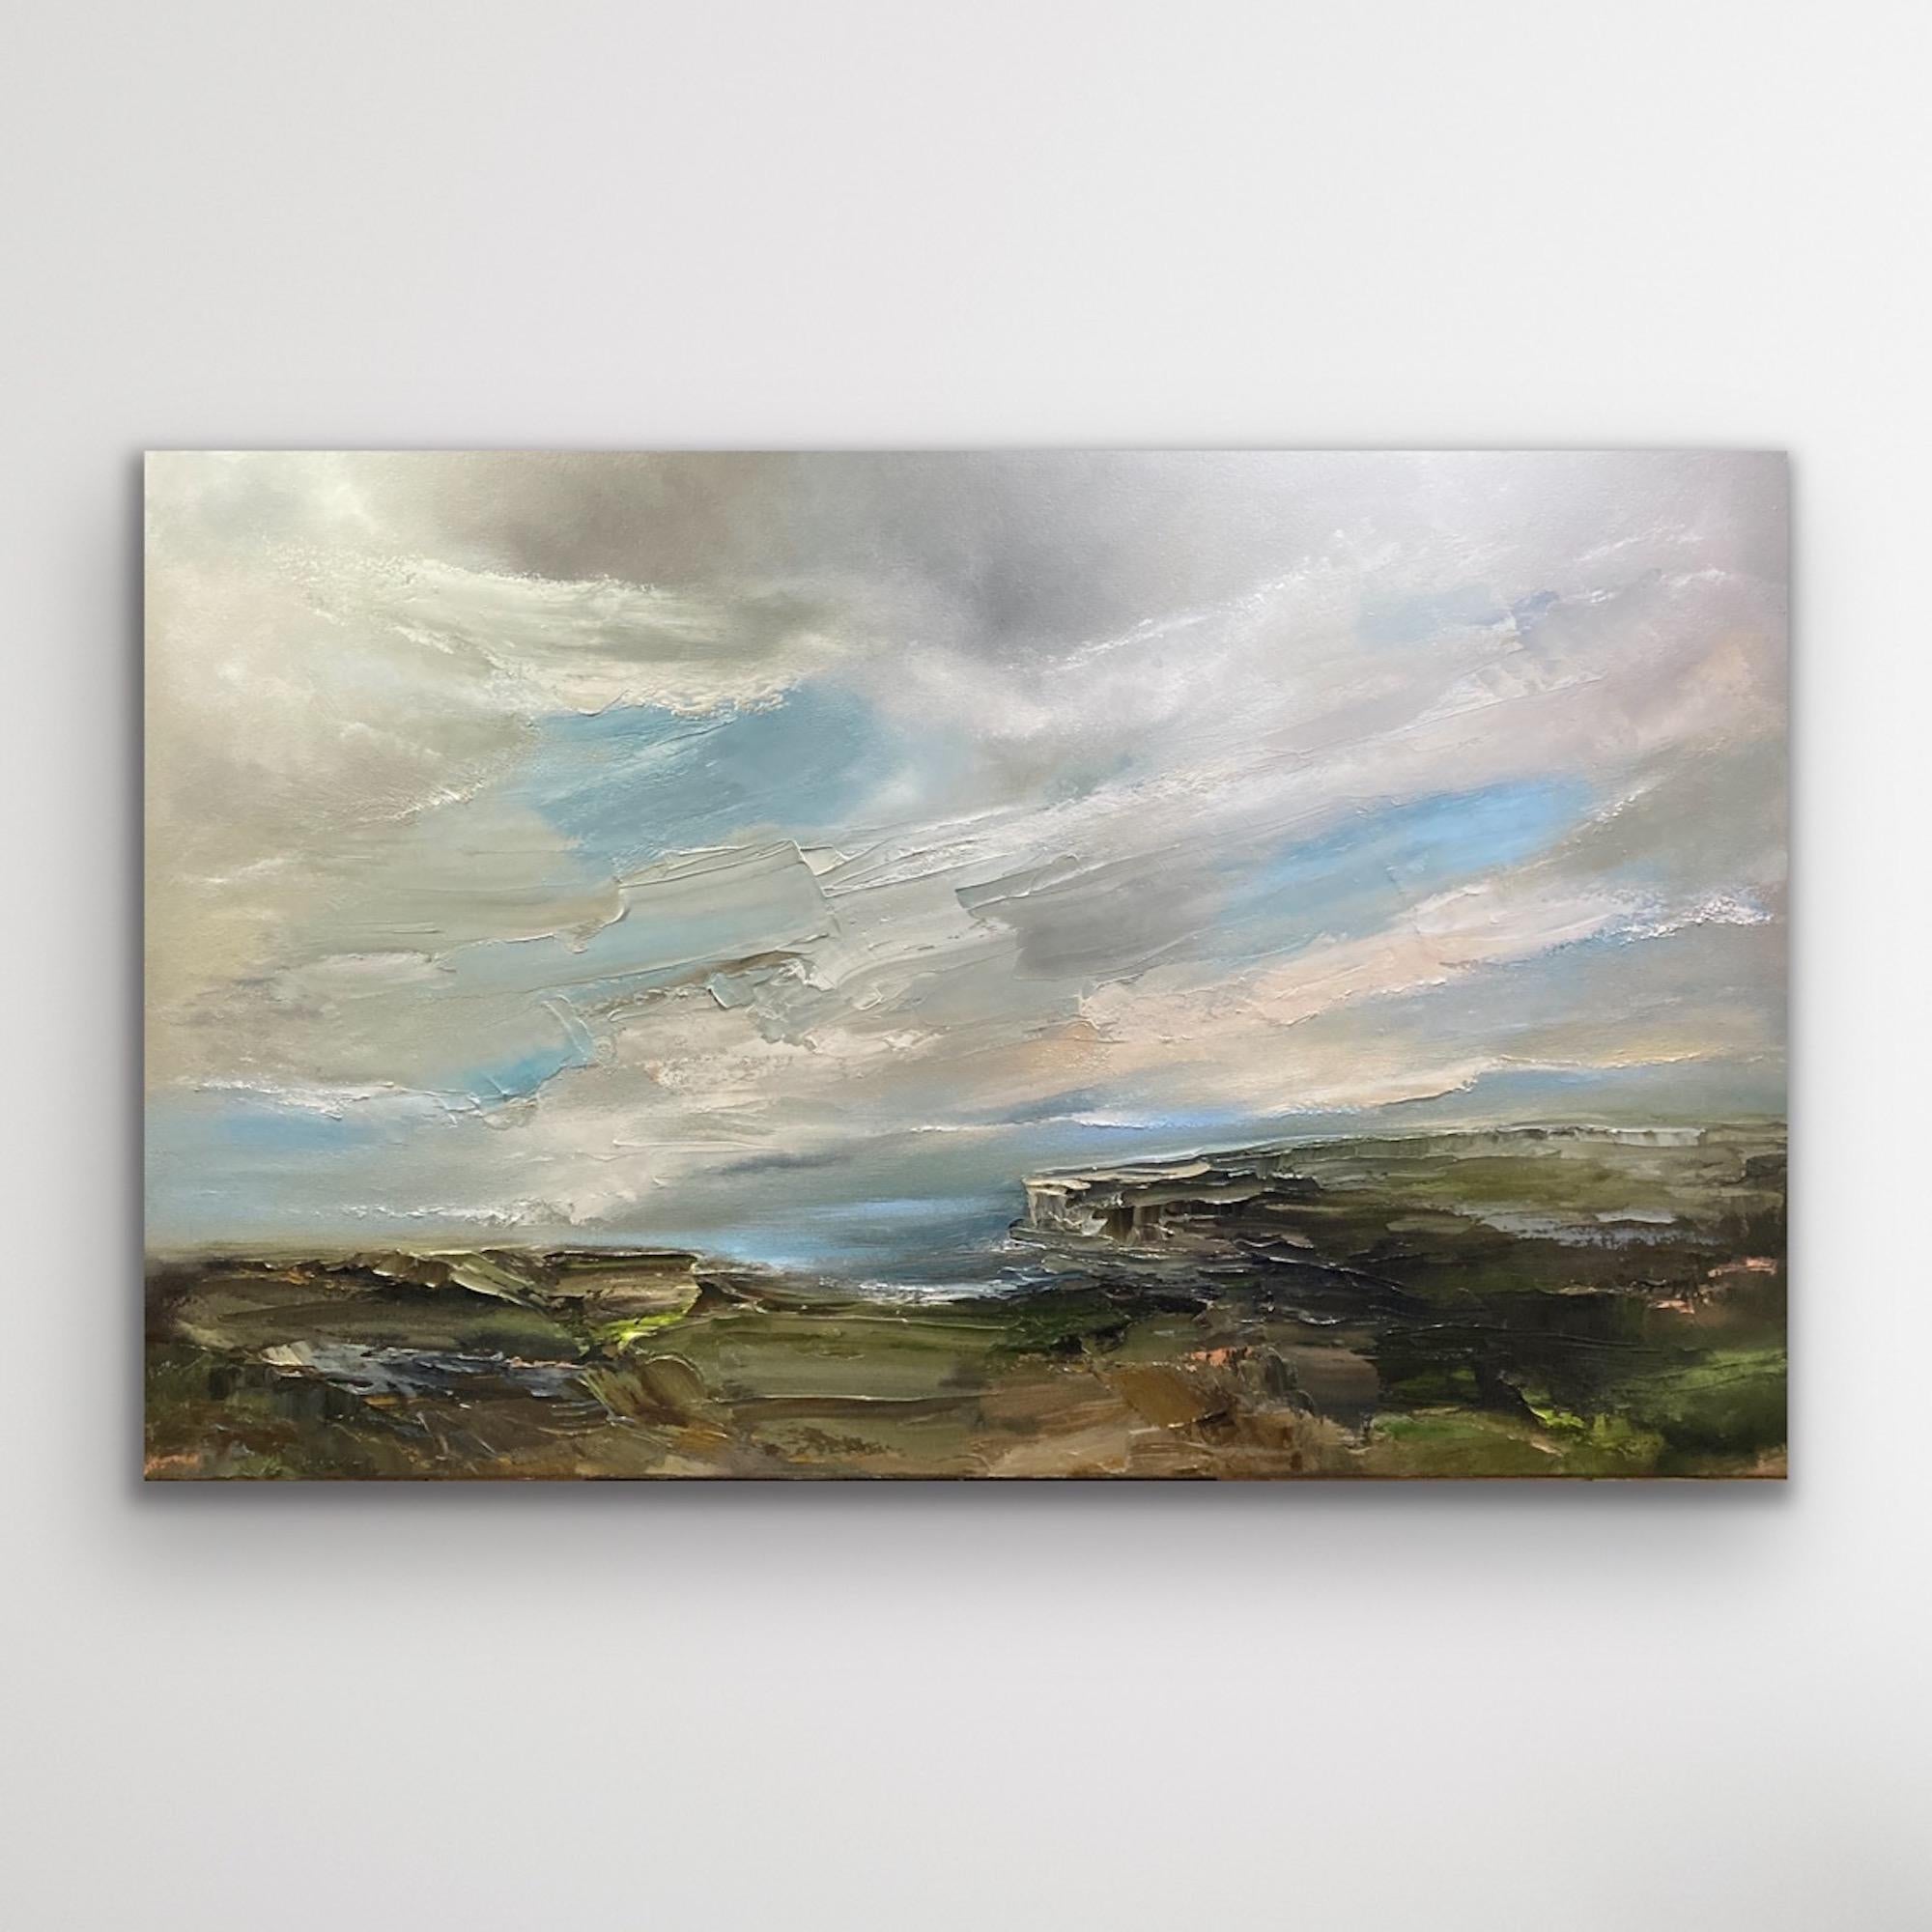 Cliff Top Walk, impressionistisches Meereslandschaftsgemälde, Moody South Wales Landschaft (Zeitgenössisch), Painting, von Helen Howells